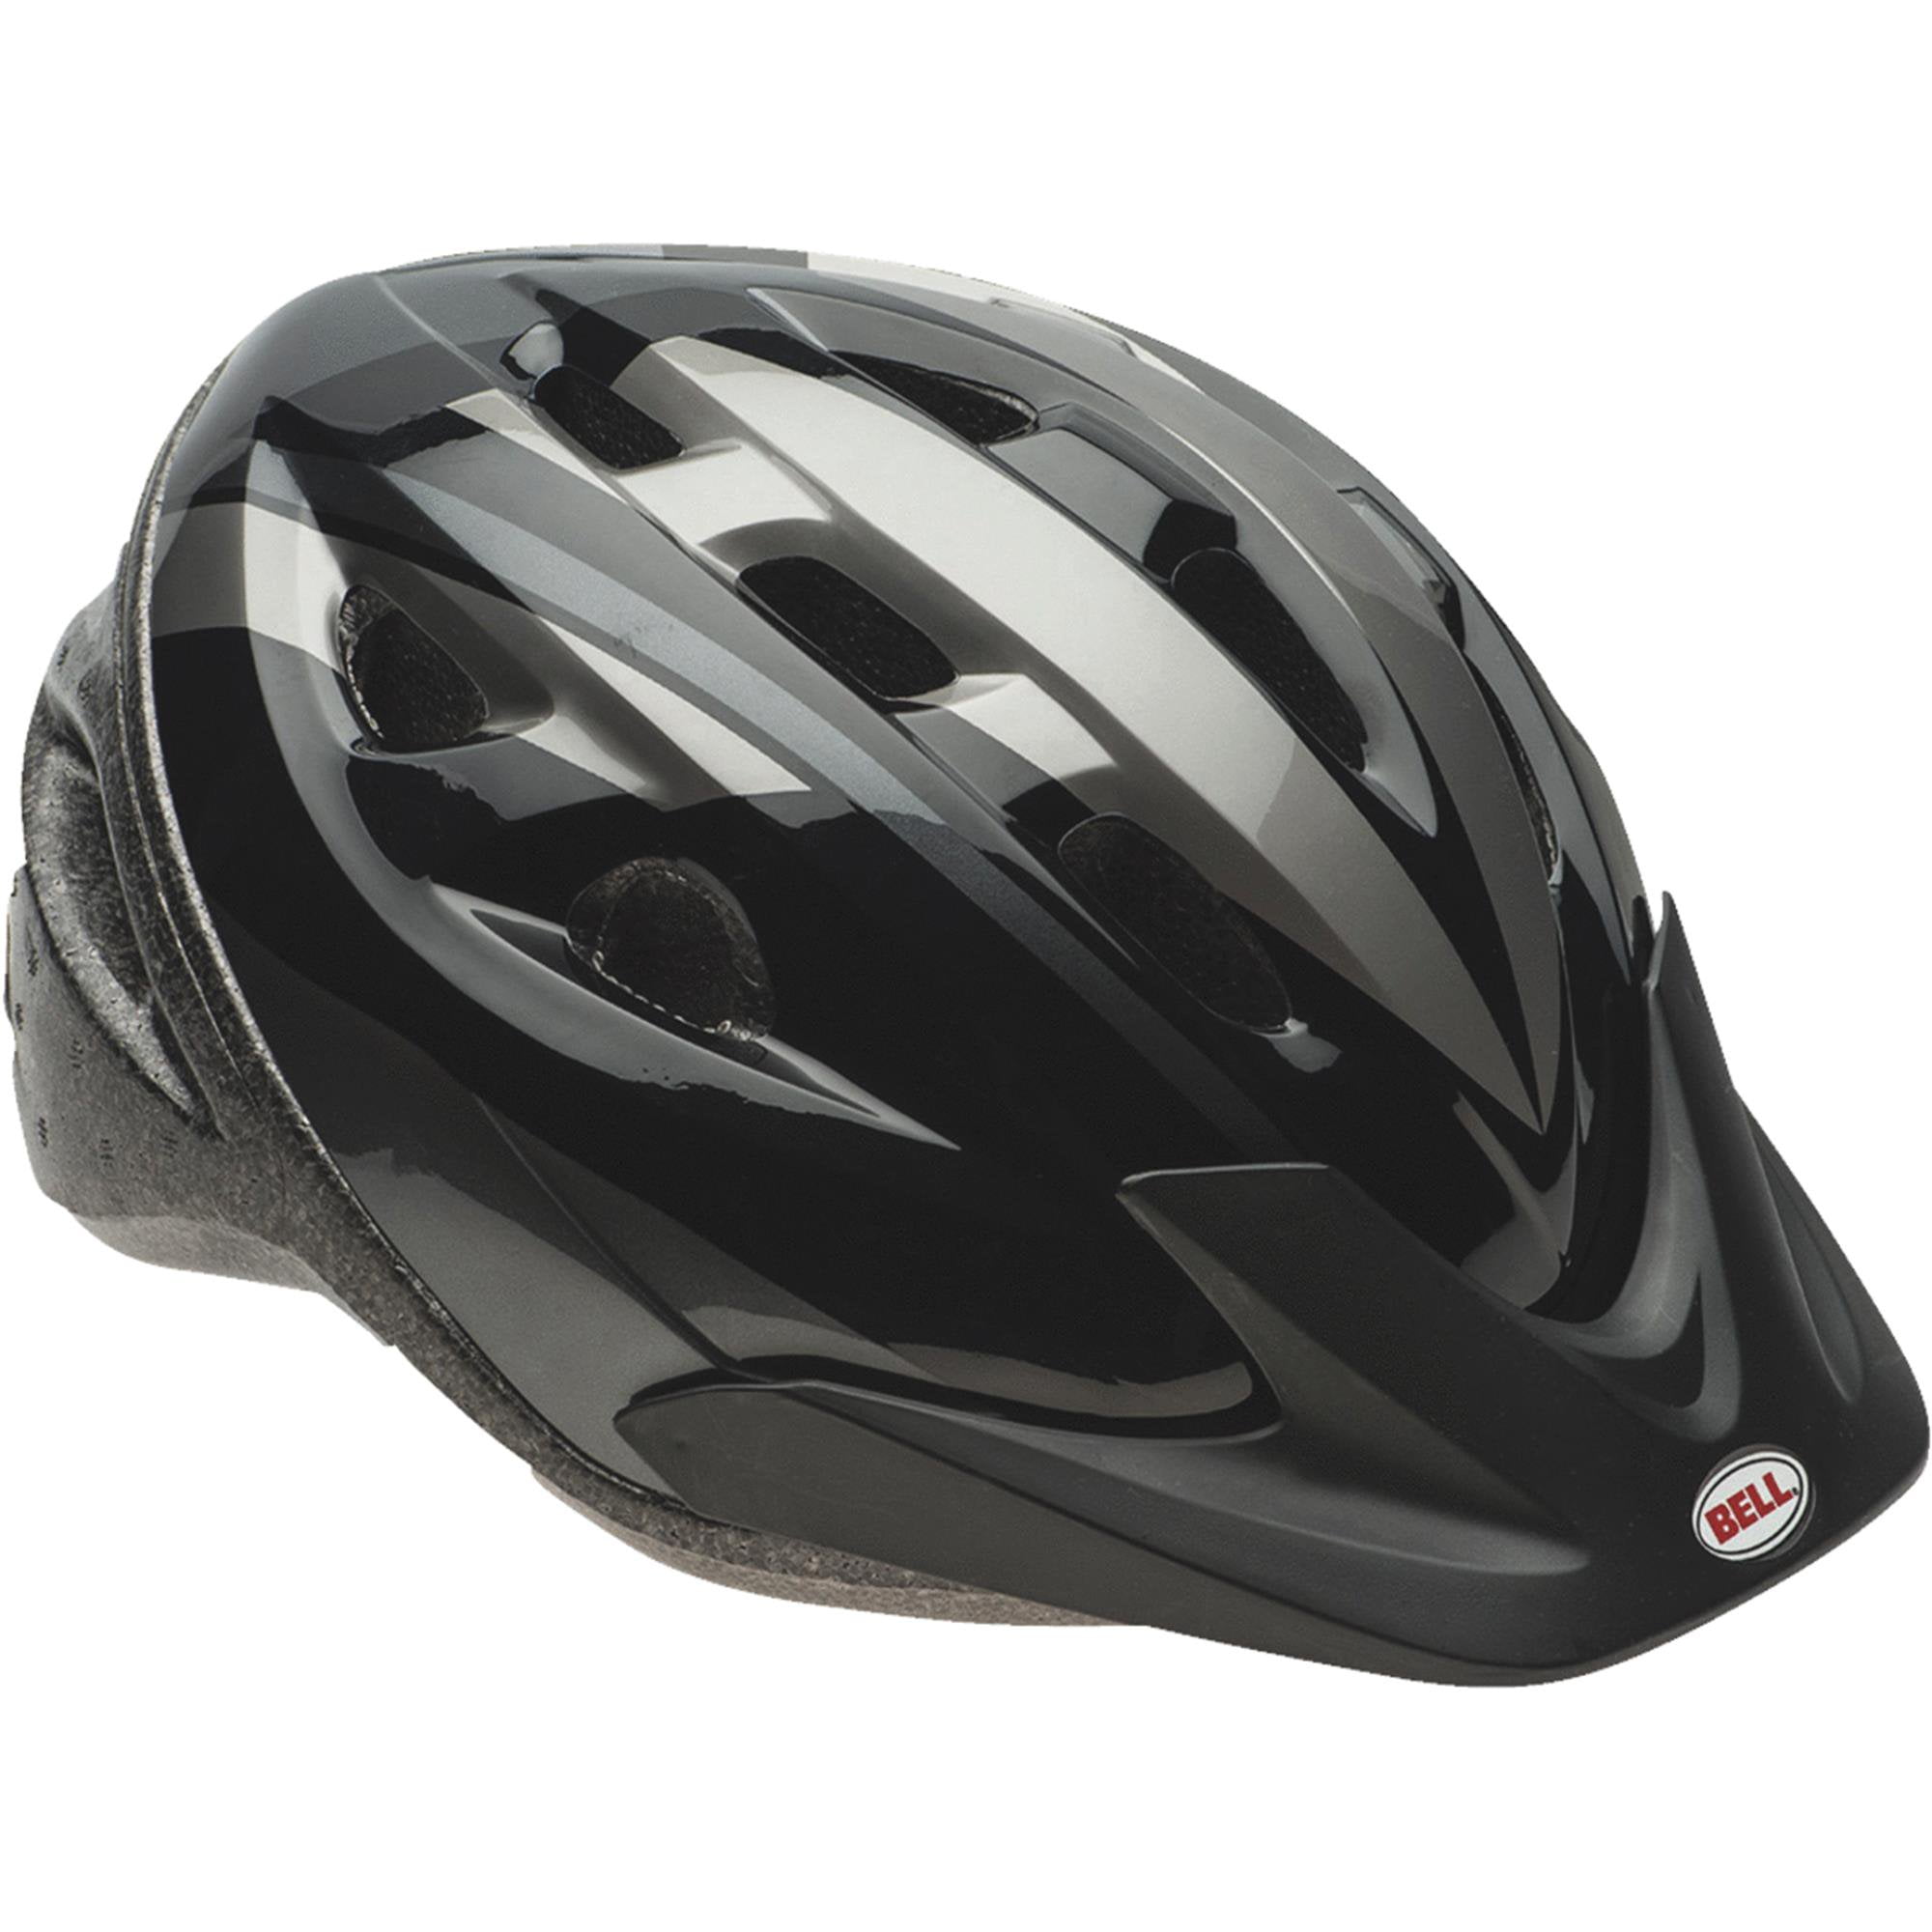 Gun Metal Gray/Orange L/XL Cannondale Intake MIPS Cycling Helmet 58-61cm 